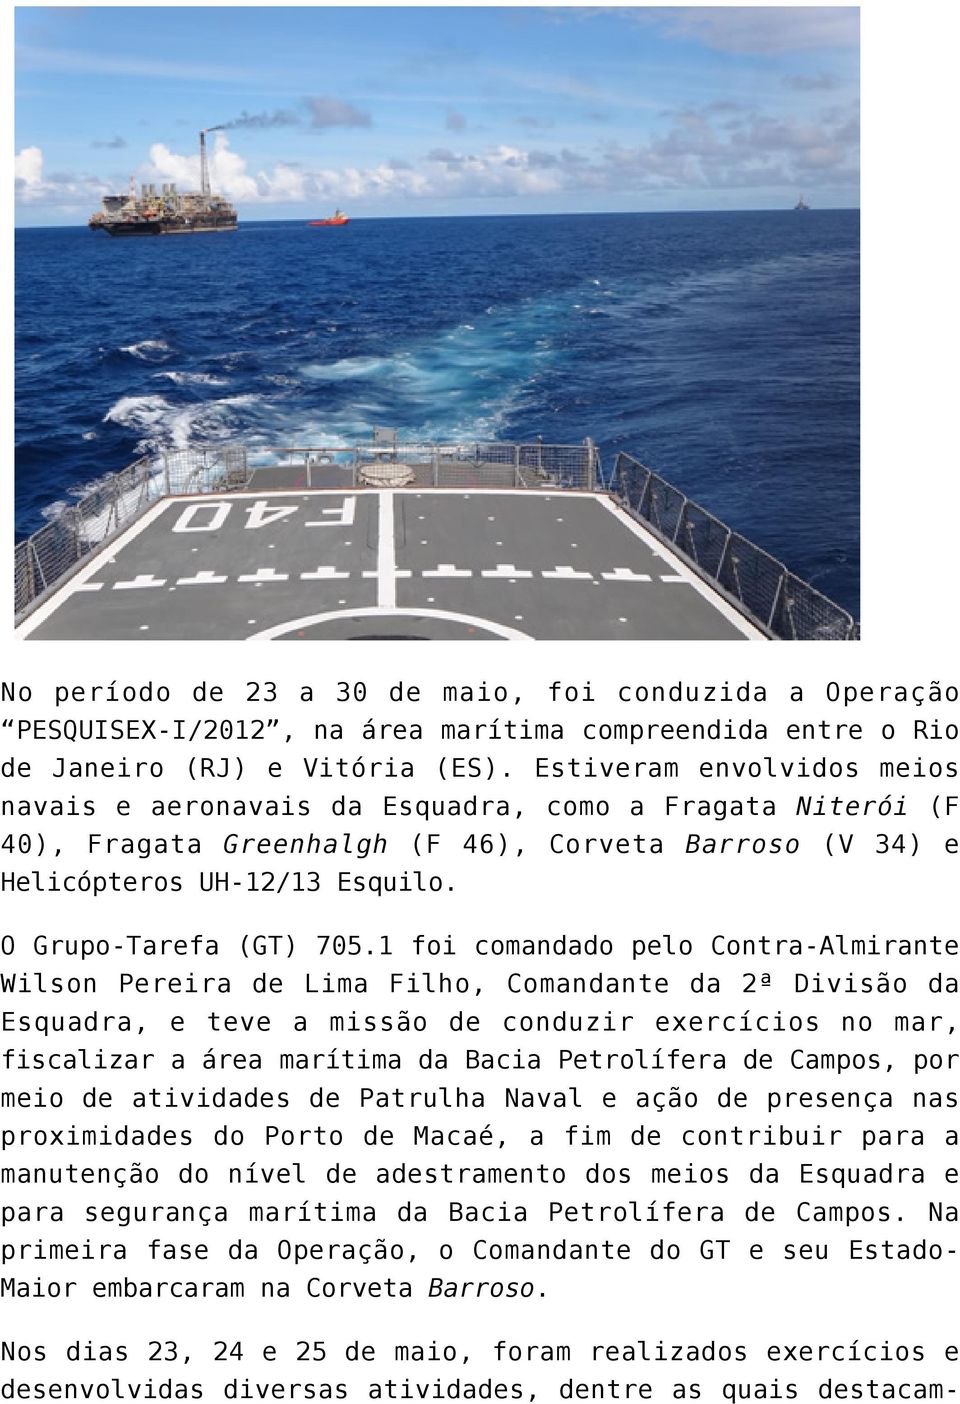 1 foi comandado pelo Contra-Almirante Wilson Pereira de Lima Filho, Comandante da 2ª Divisão da Esquadra, e teve a missão de conduzir exercícios no mar, fiscalizar a área marítima da Bacia